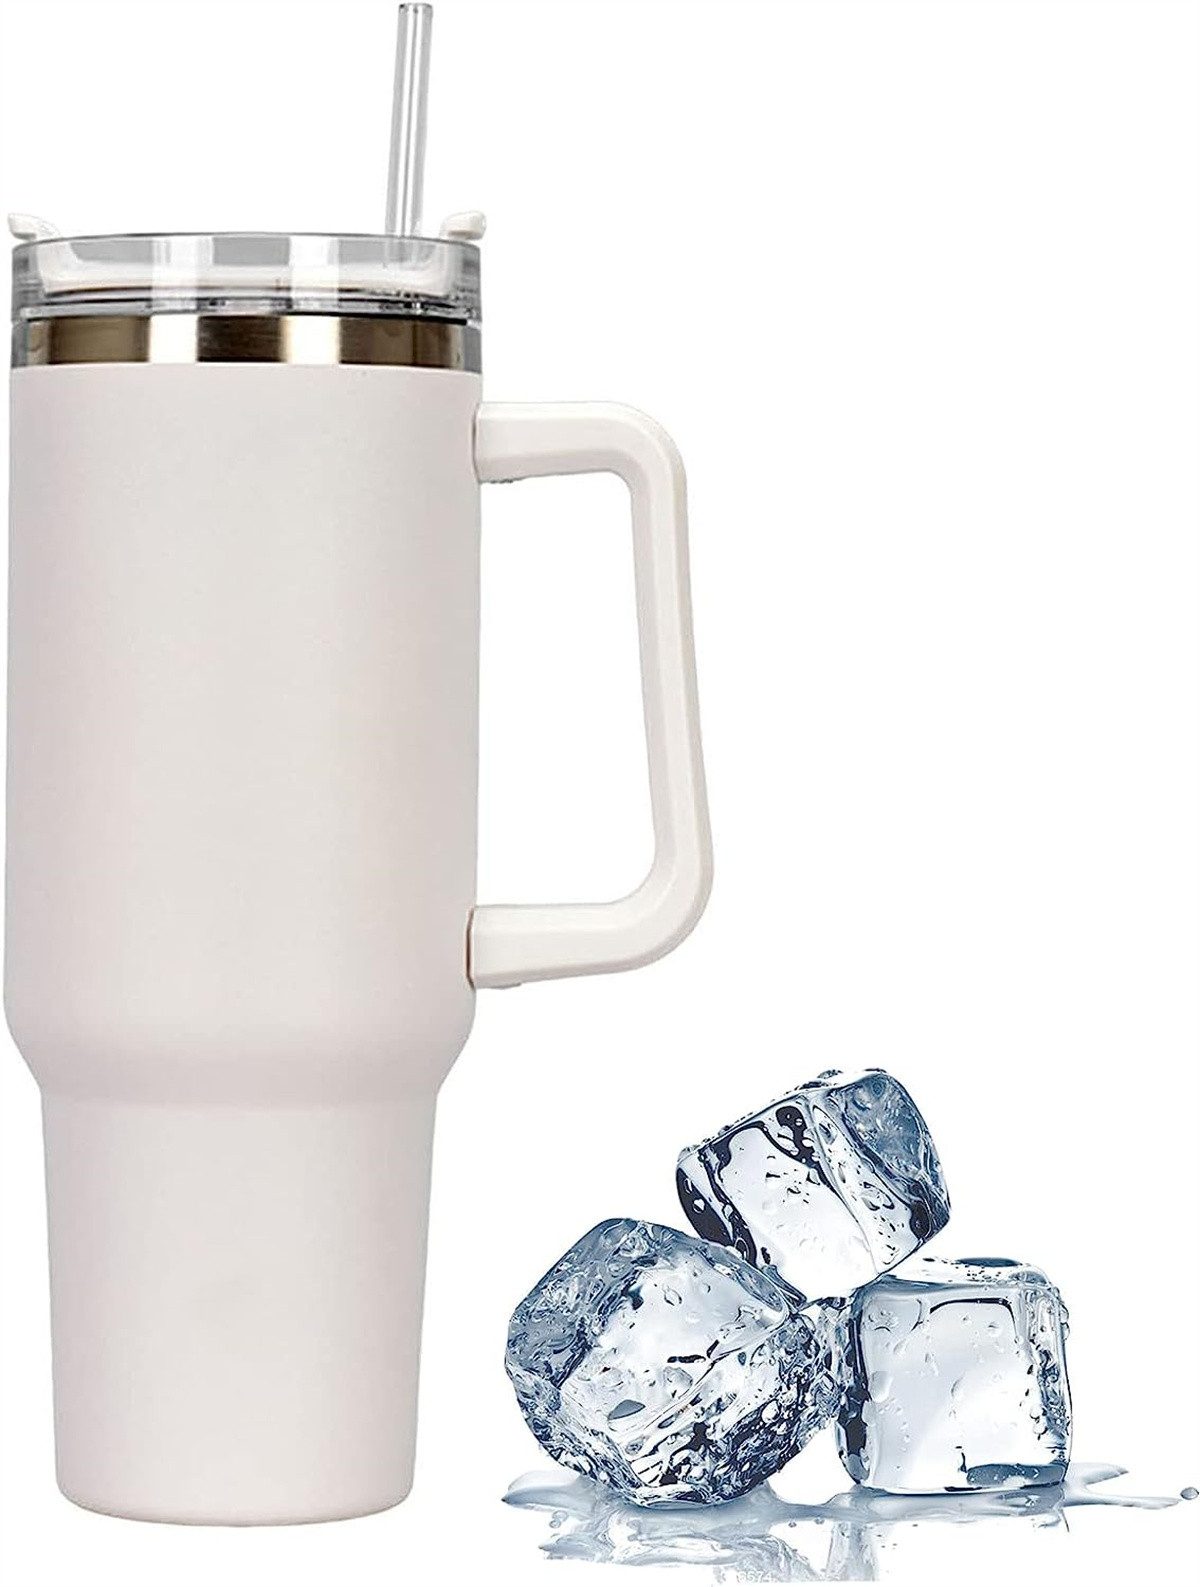 RefinedFlare Thermobecher Isolierbecher, 1182 ml 40 oz To-Go-Kaffeetasse, Doppelwandiger Vakuumbecher aus Edelstahl mit Griff und Strohhalm